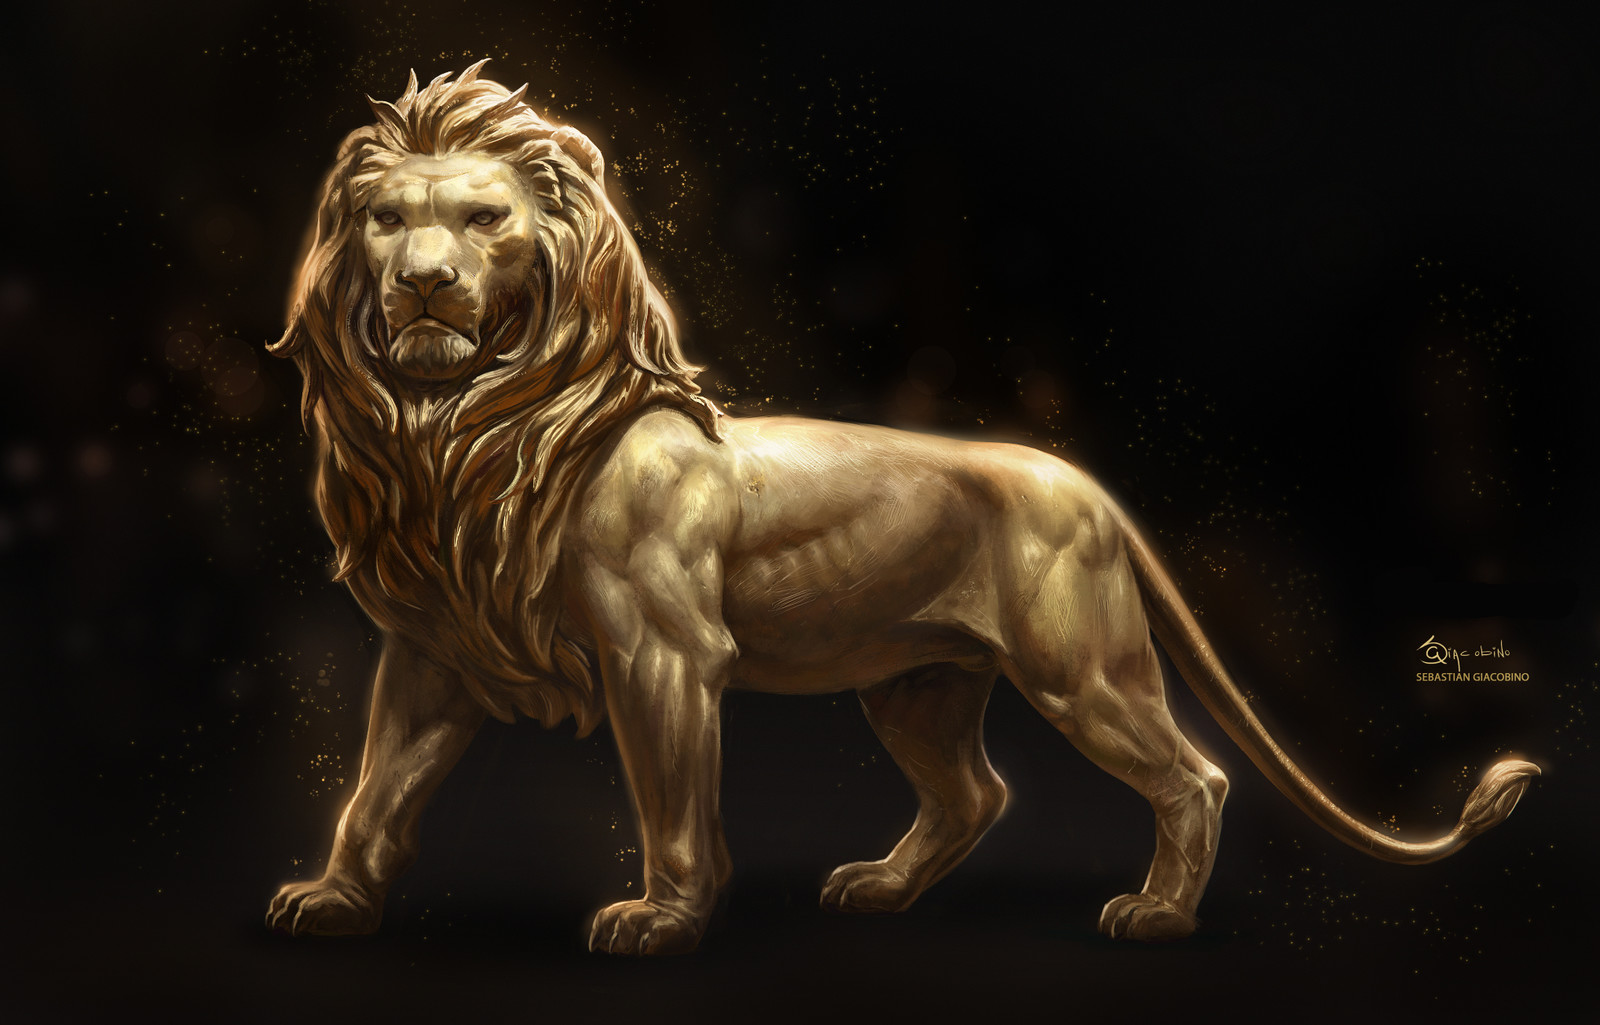 Sebastian Giacobino - Bronze Dragon, Golden Lion_Creature designs for a ...